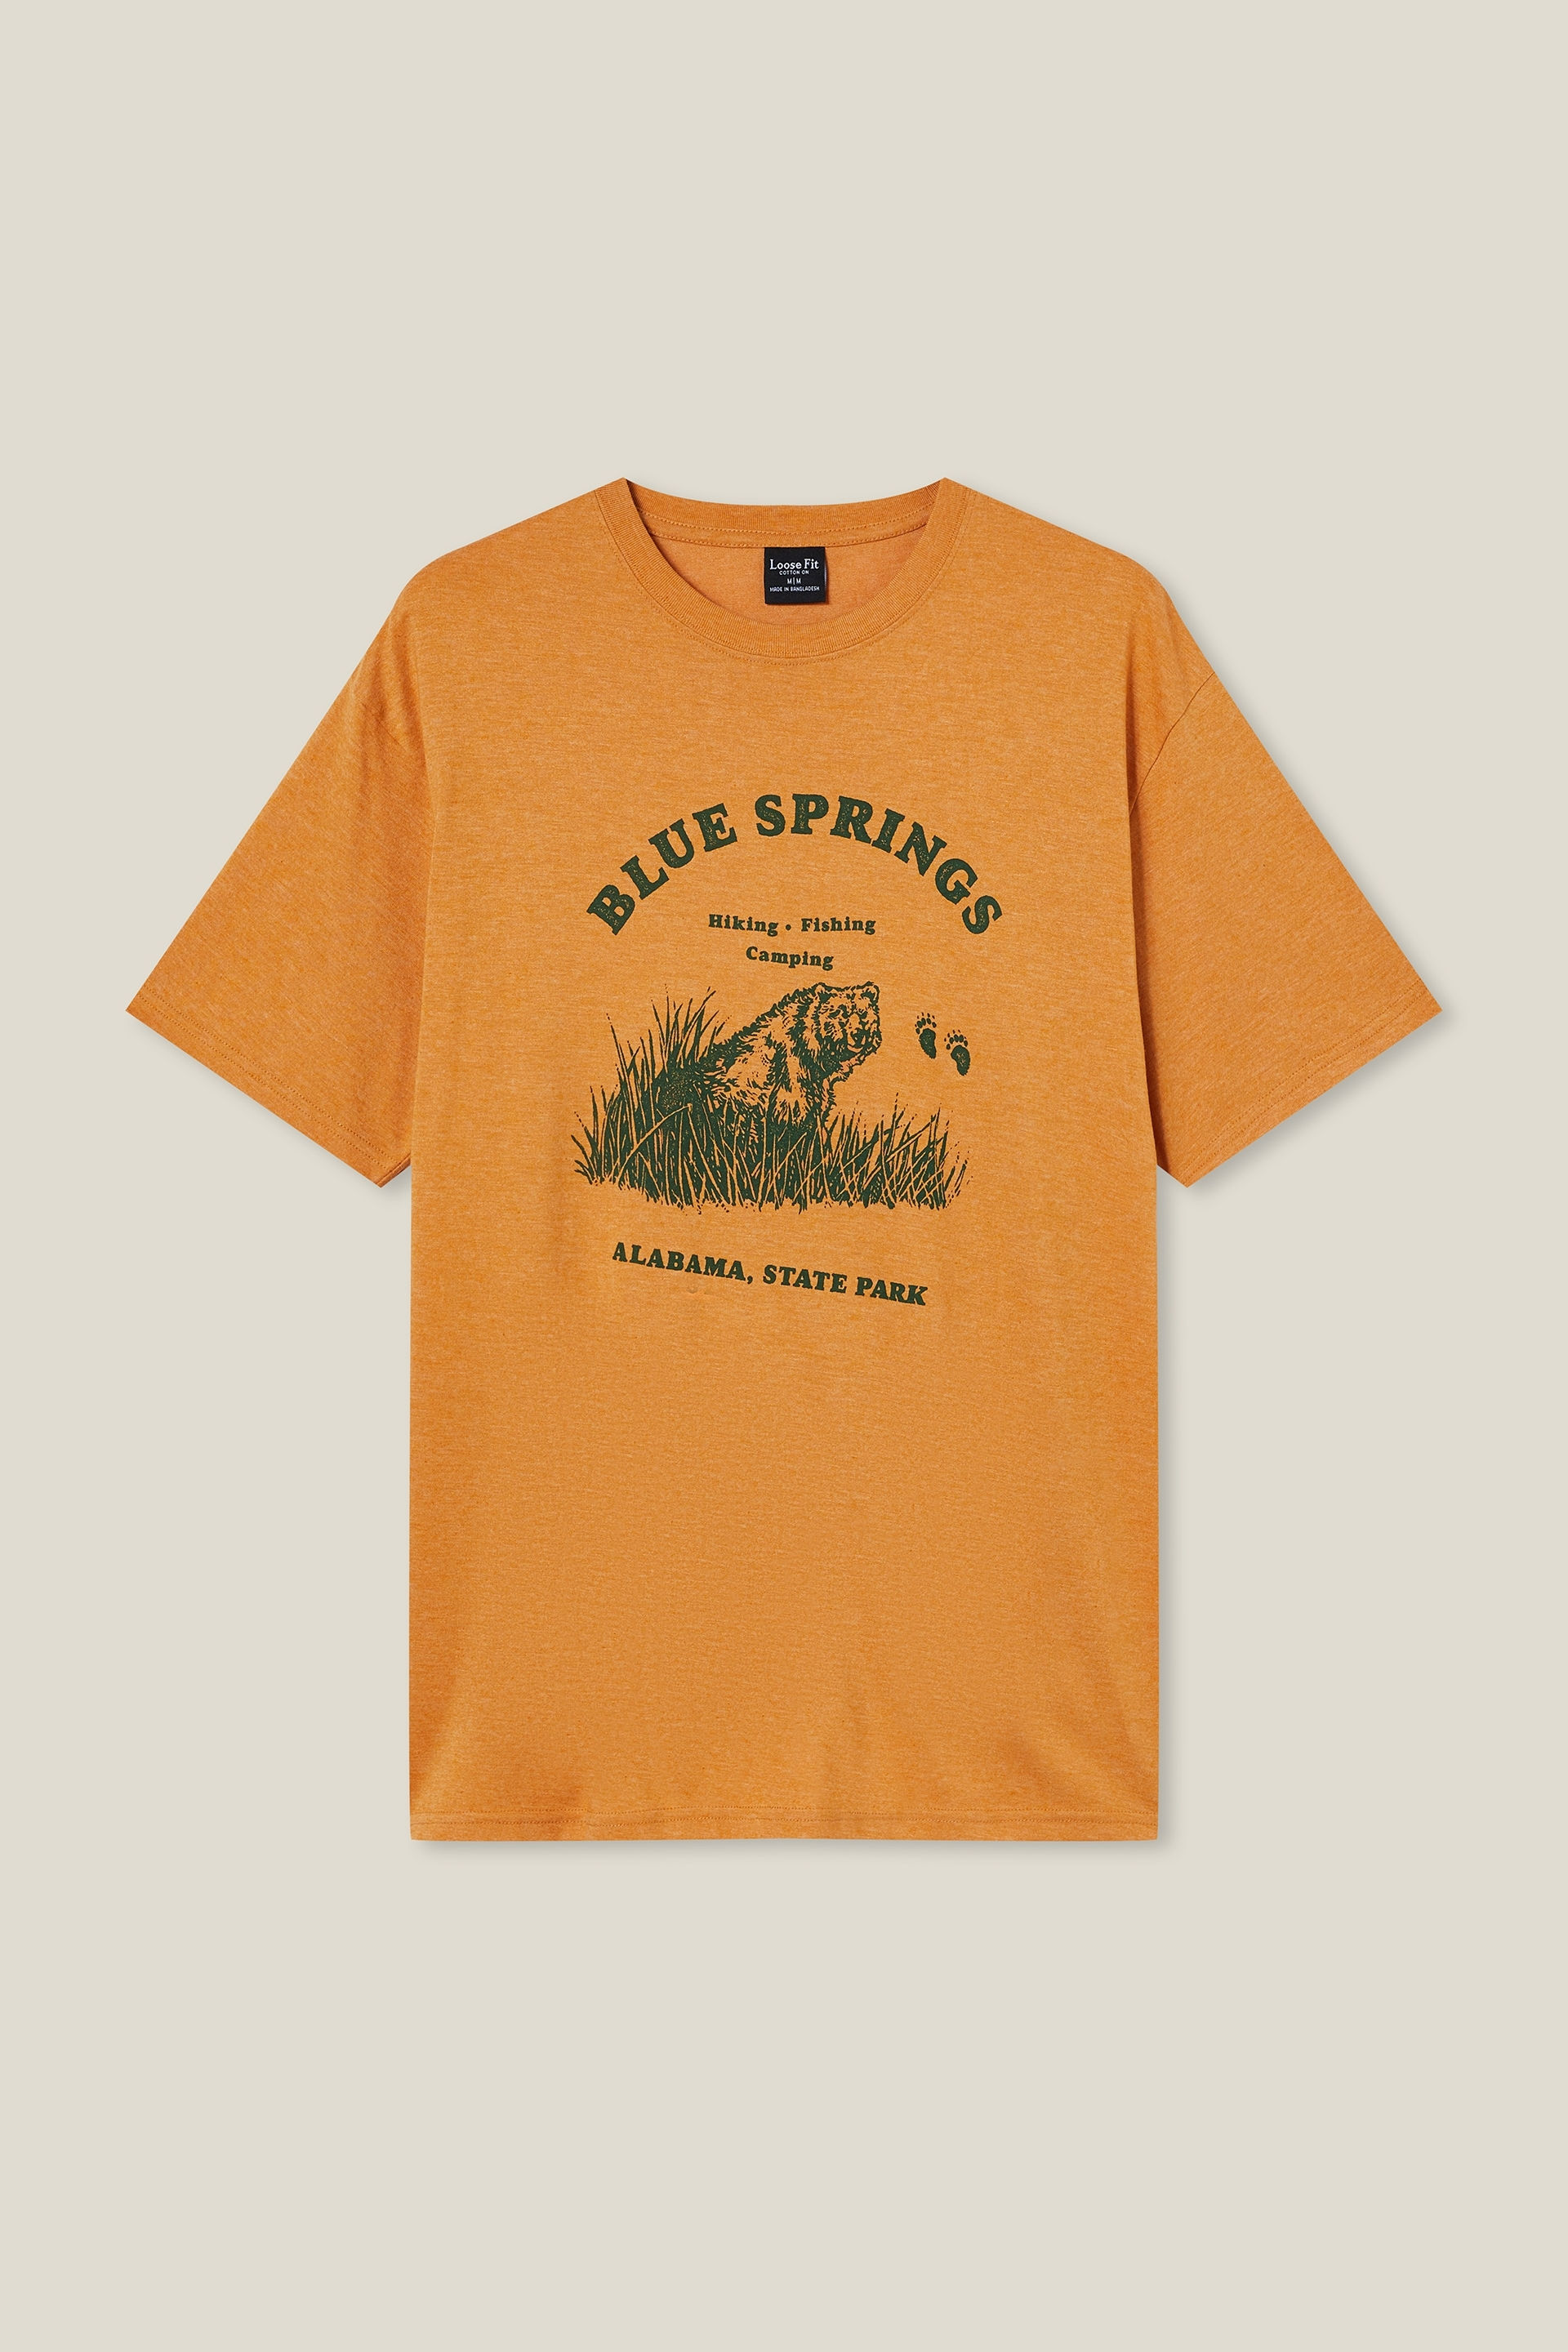 Cotton On Men - Loose Fit Souvenir T-Shirt - Honey gold/alabama State Park